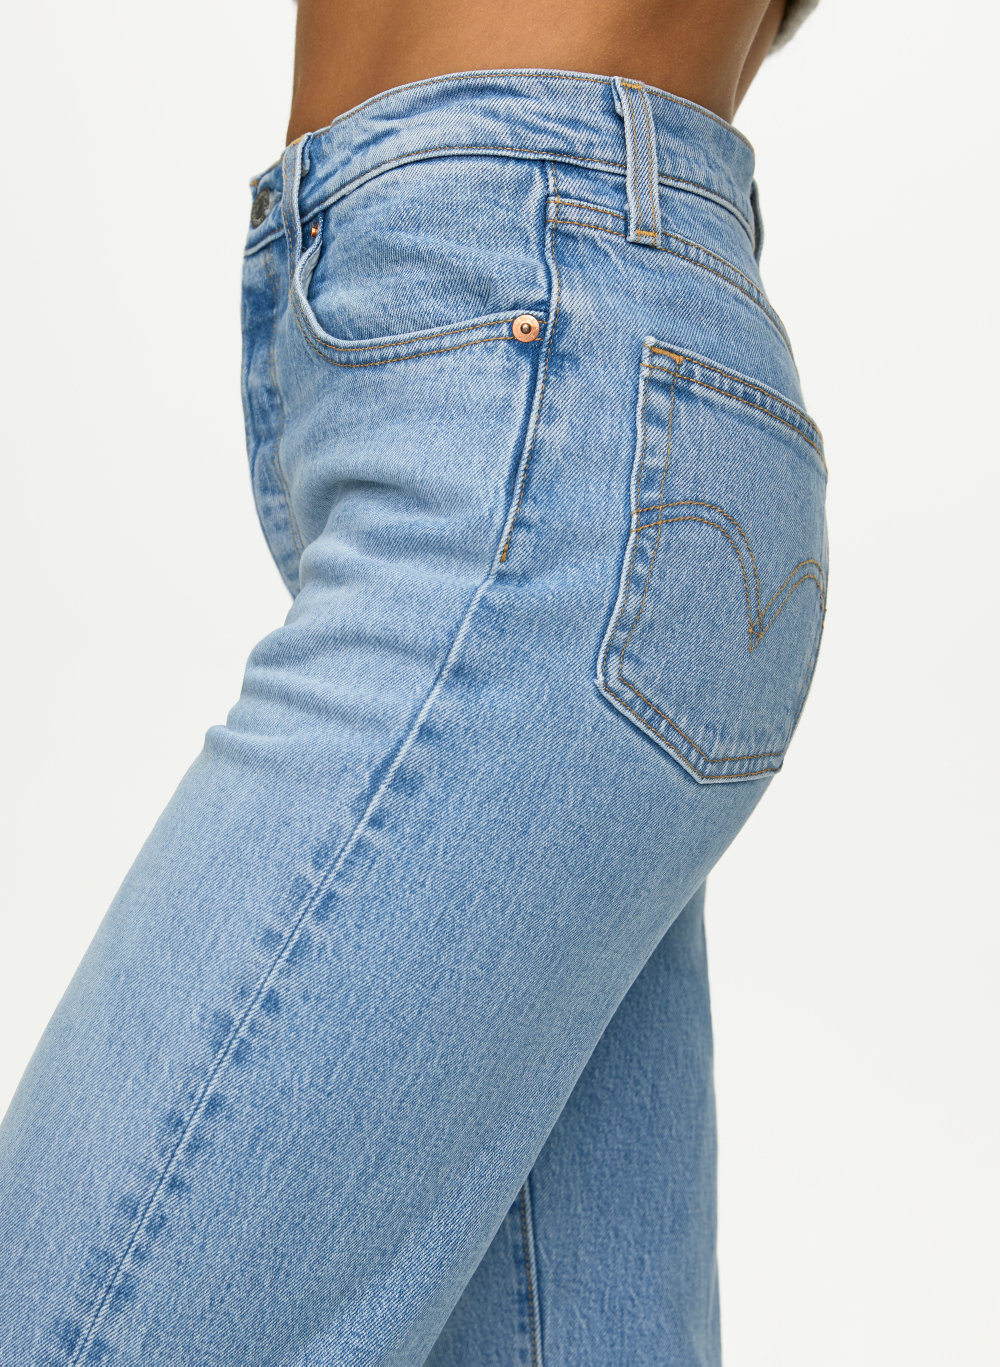 levis jeans length